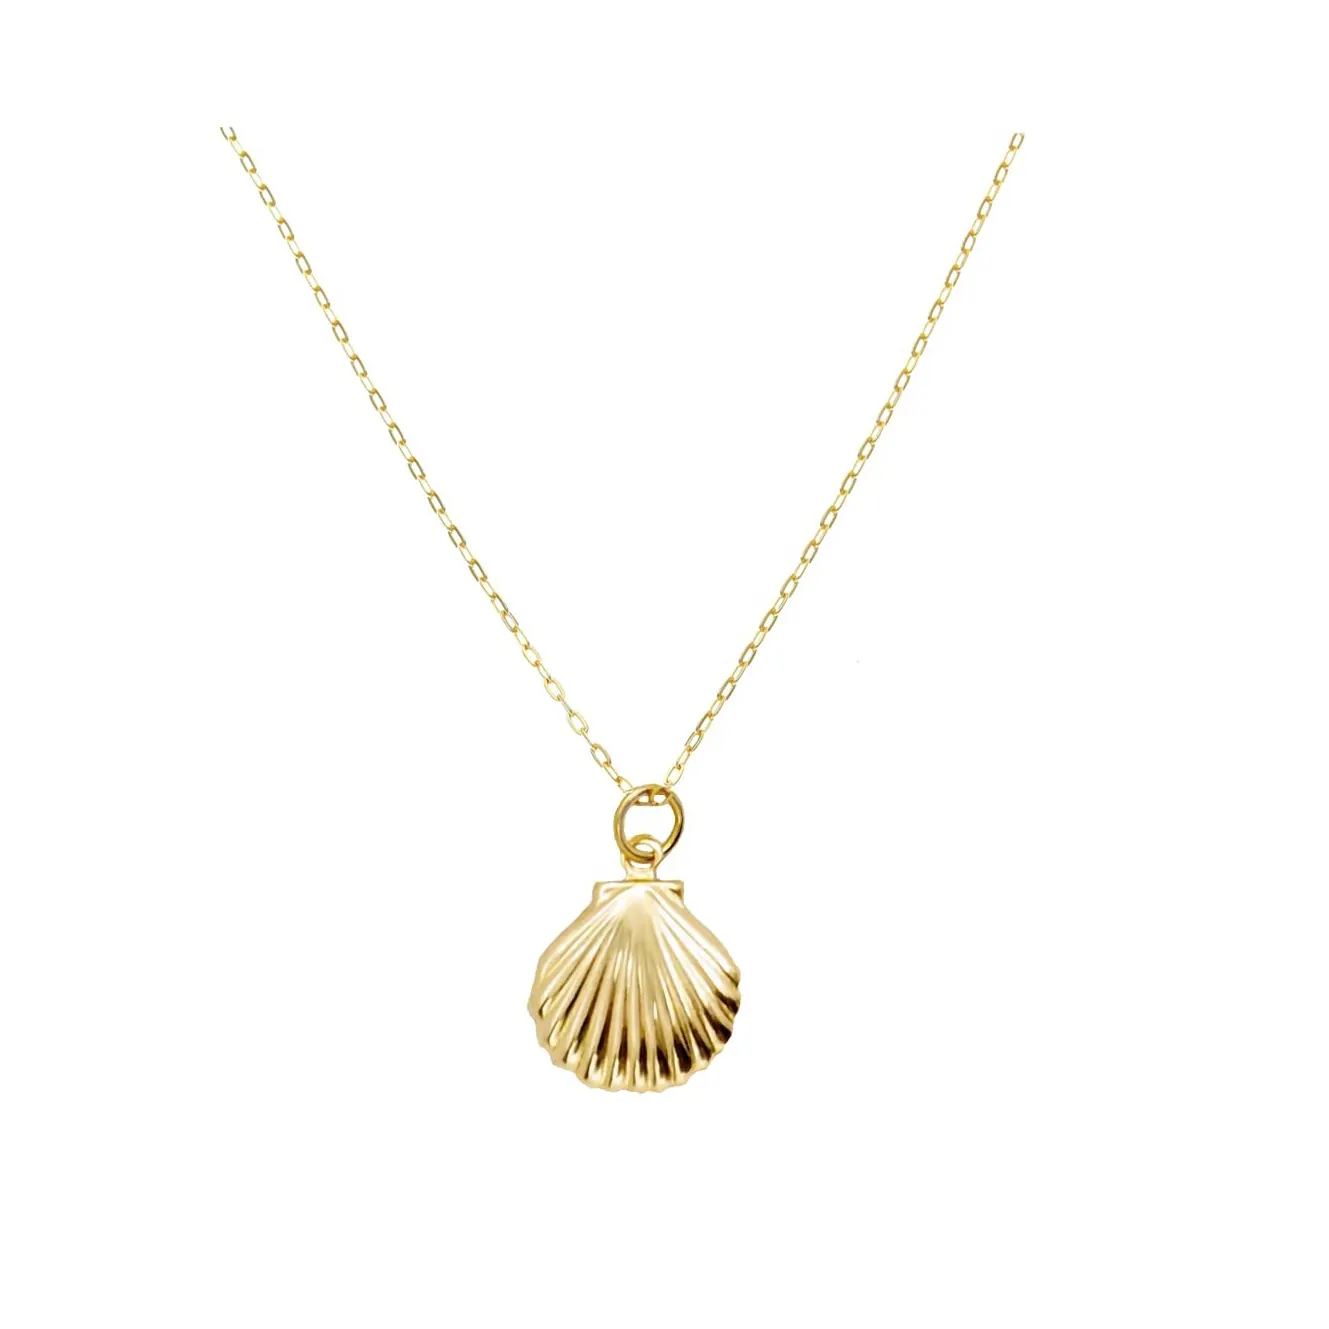 Gold und braun Anhänger Shell Halskette hand gefertigt in mit einem wichtigen Gold zentral gravierte Element